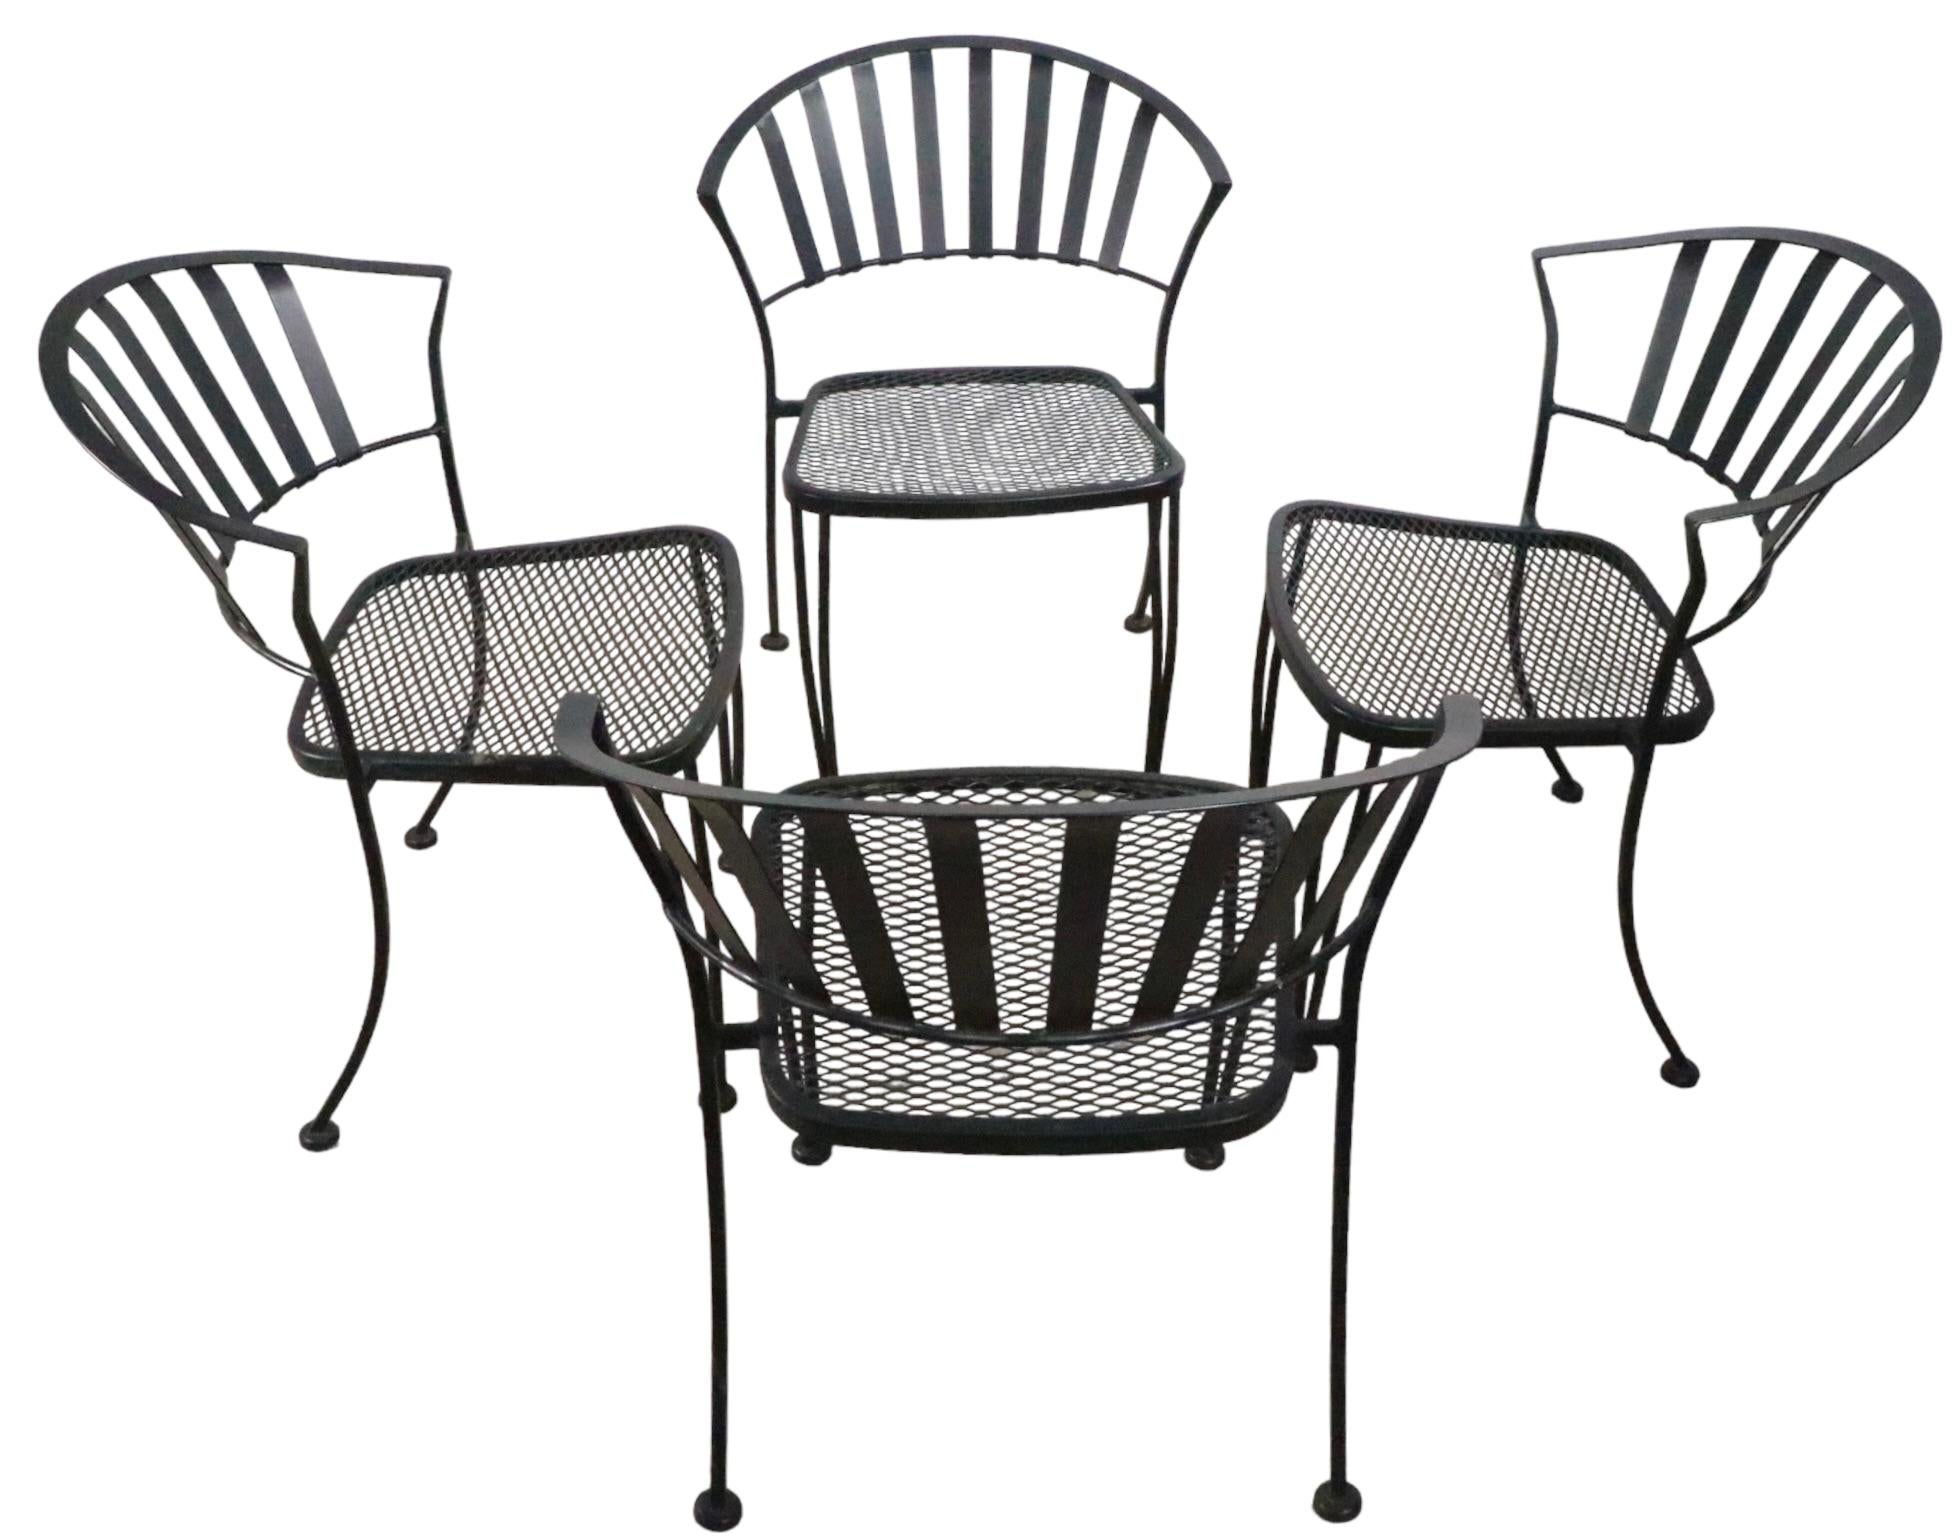 Ensemble de quatre chaises de jardin, de patio et de piscine en fer forgé et en métal. Les chaises ont des dossiers en métal et des sièges en maille métallique. Tous les quatre sont en très bon état, d'origine, propres et prêts à l'emploi, ne